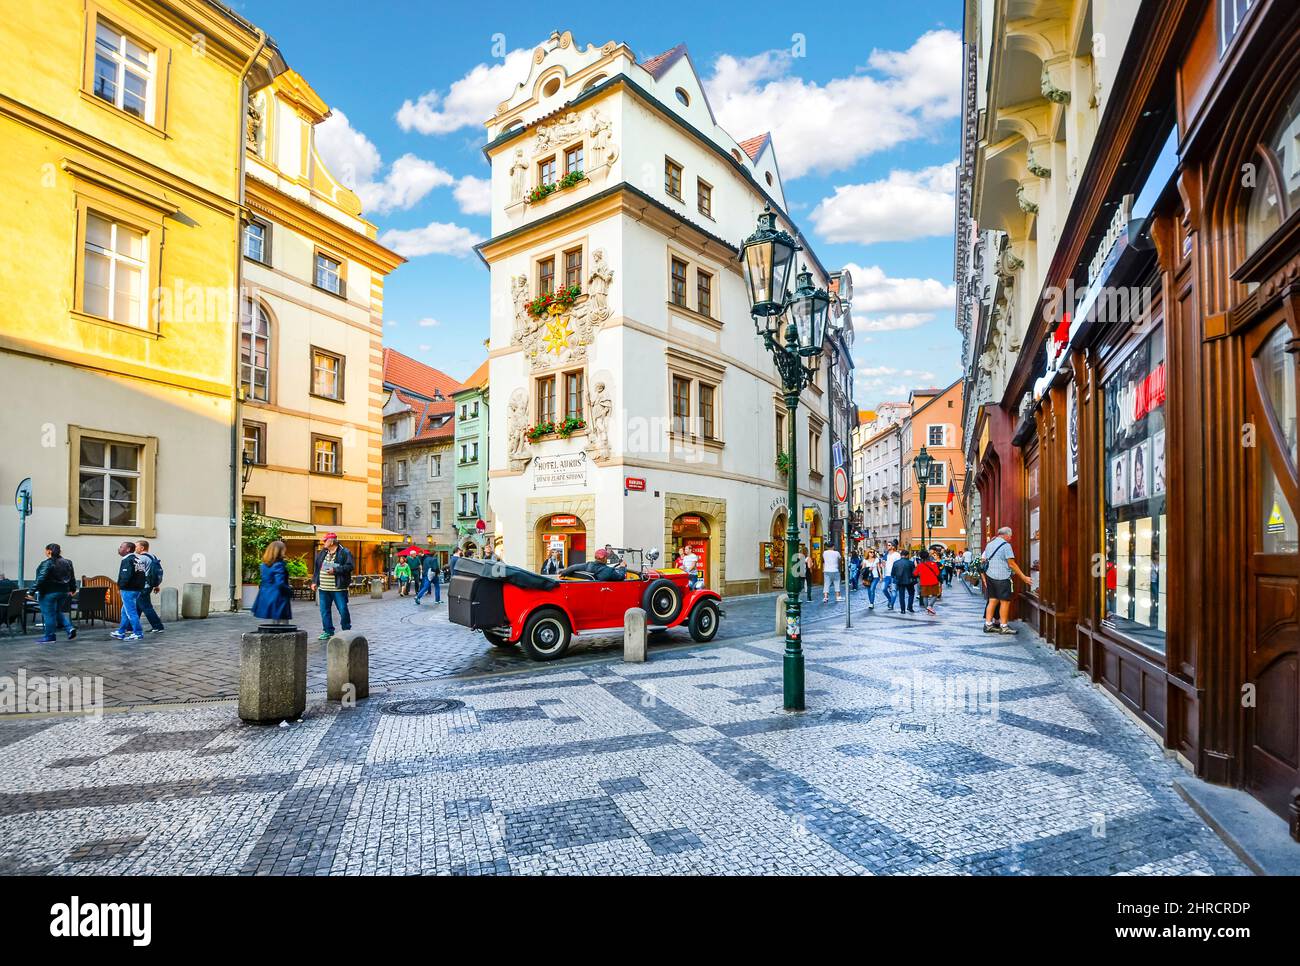 Touristen Sightseeing, Einkaufen und die Cafés genießen, wie Sie von einem alten roten Auto in einem malerischen Teil der Altstadt Prag, Tschechische Republik. Stockfoto